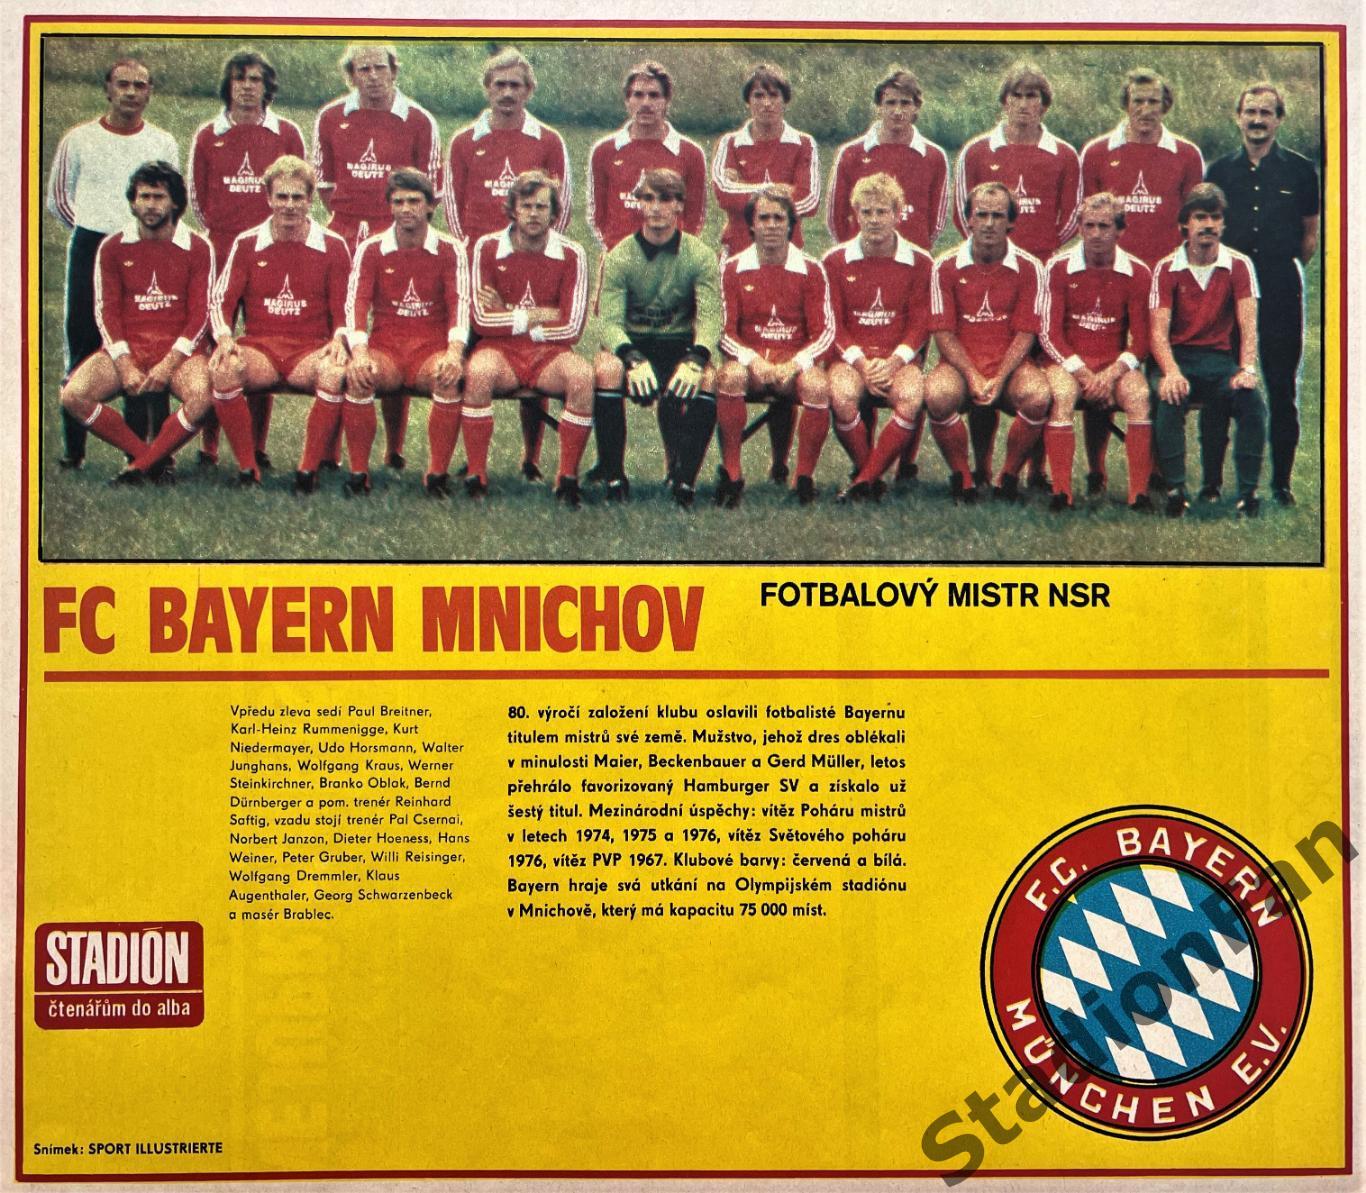 Постер из журнала Стадион (Stadion) - Bayern Mnichov, 1980.